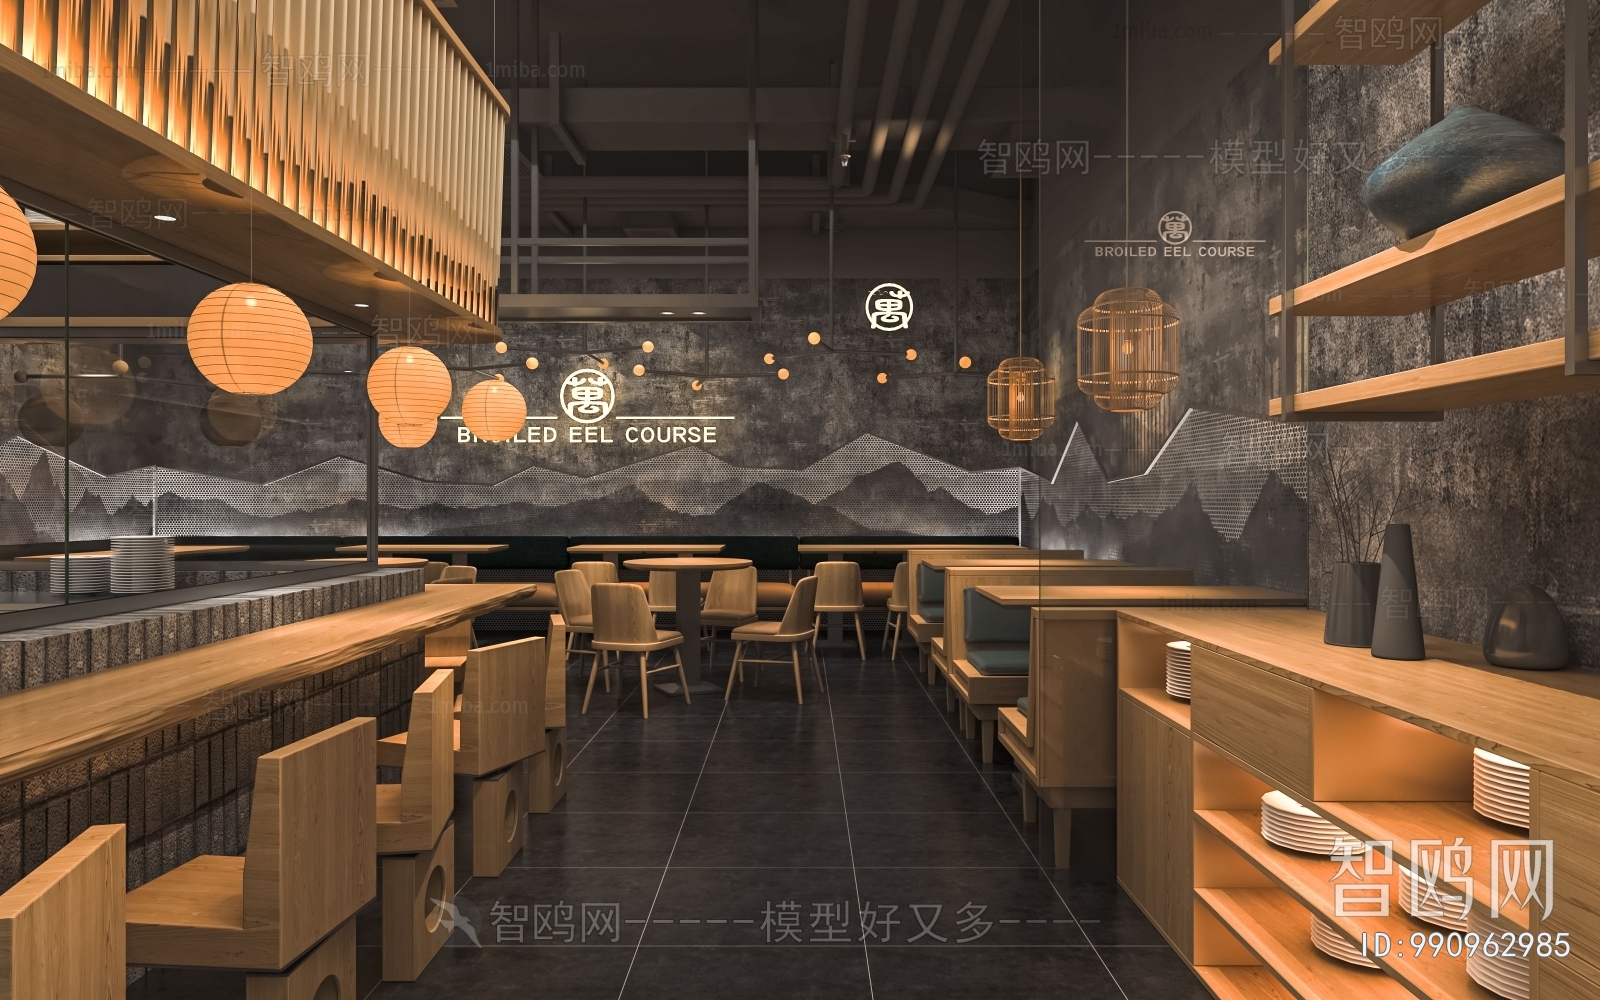 日式料理店 寿司店